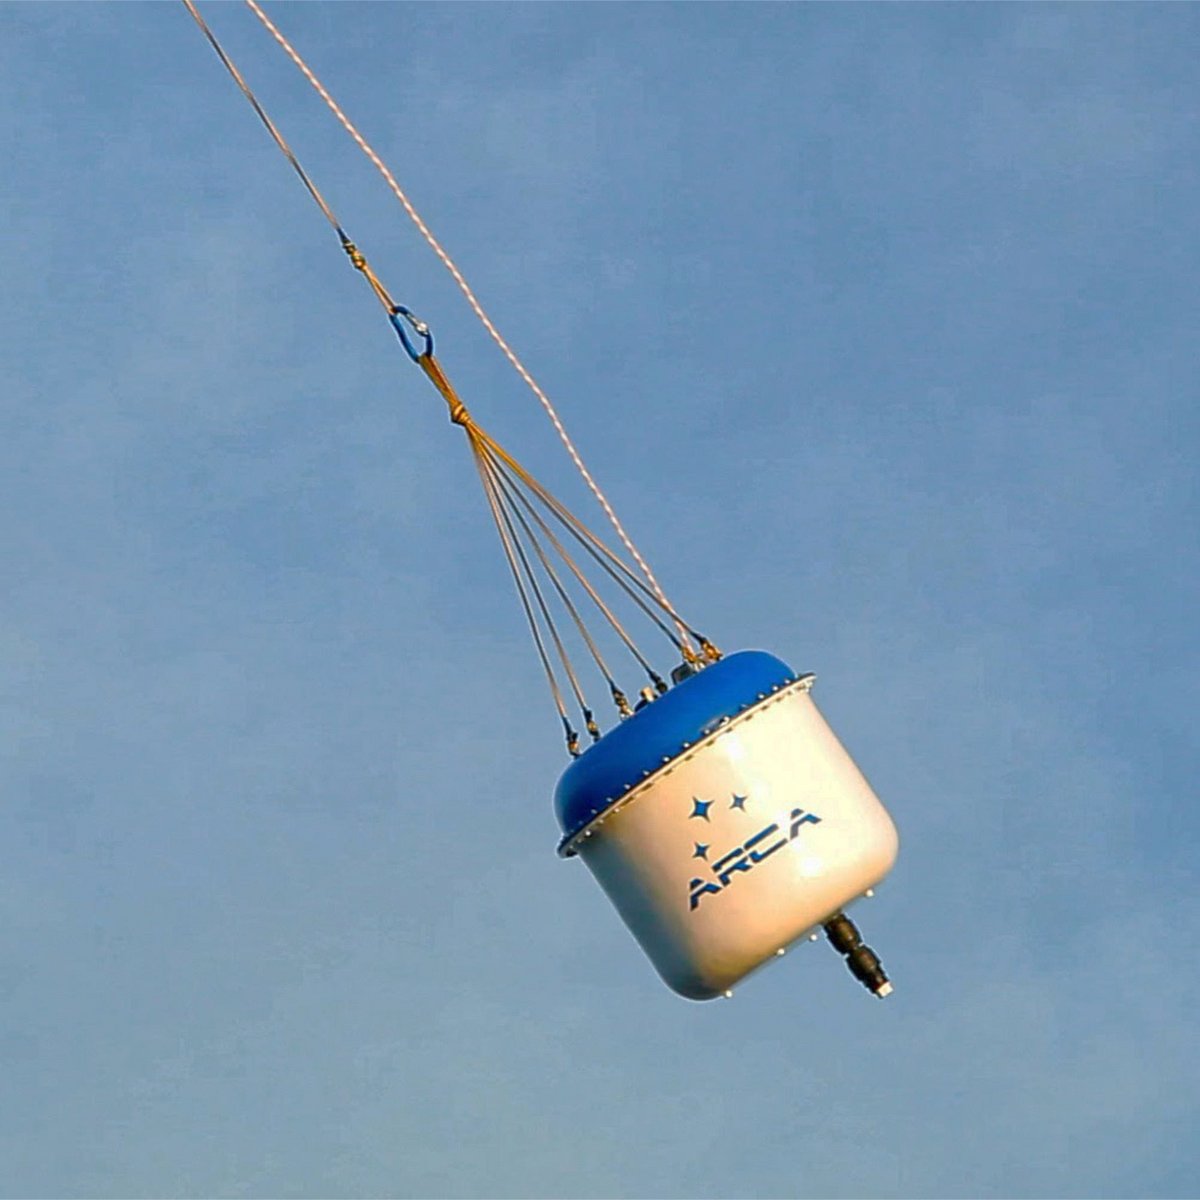 Le test sous parachute au service de l&#039;ESA, avec son container étanche © ARCA Space